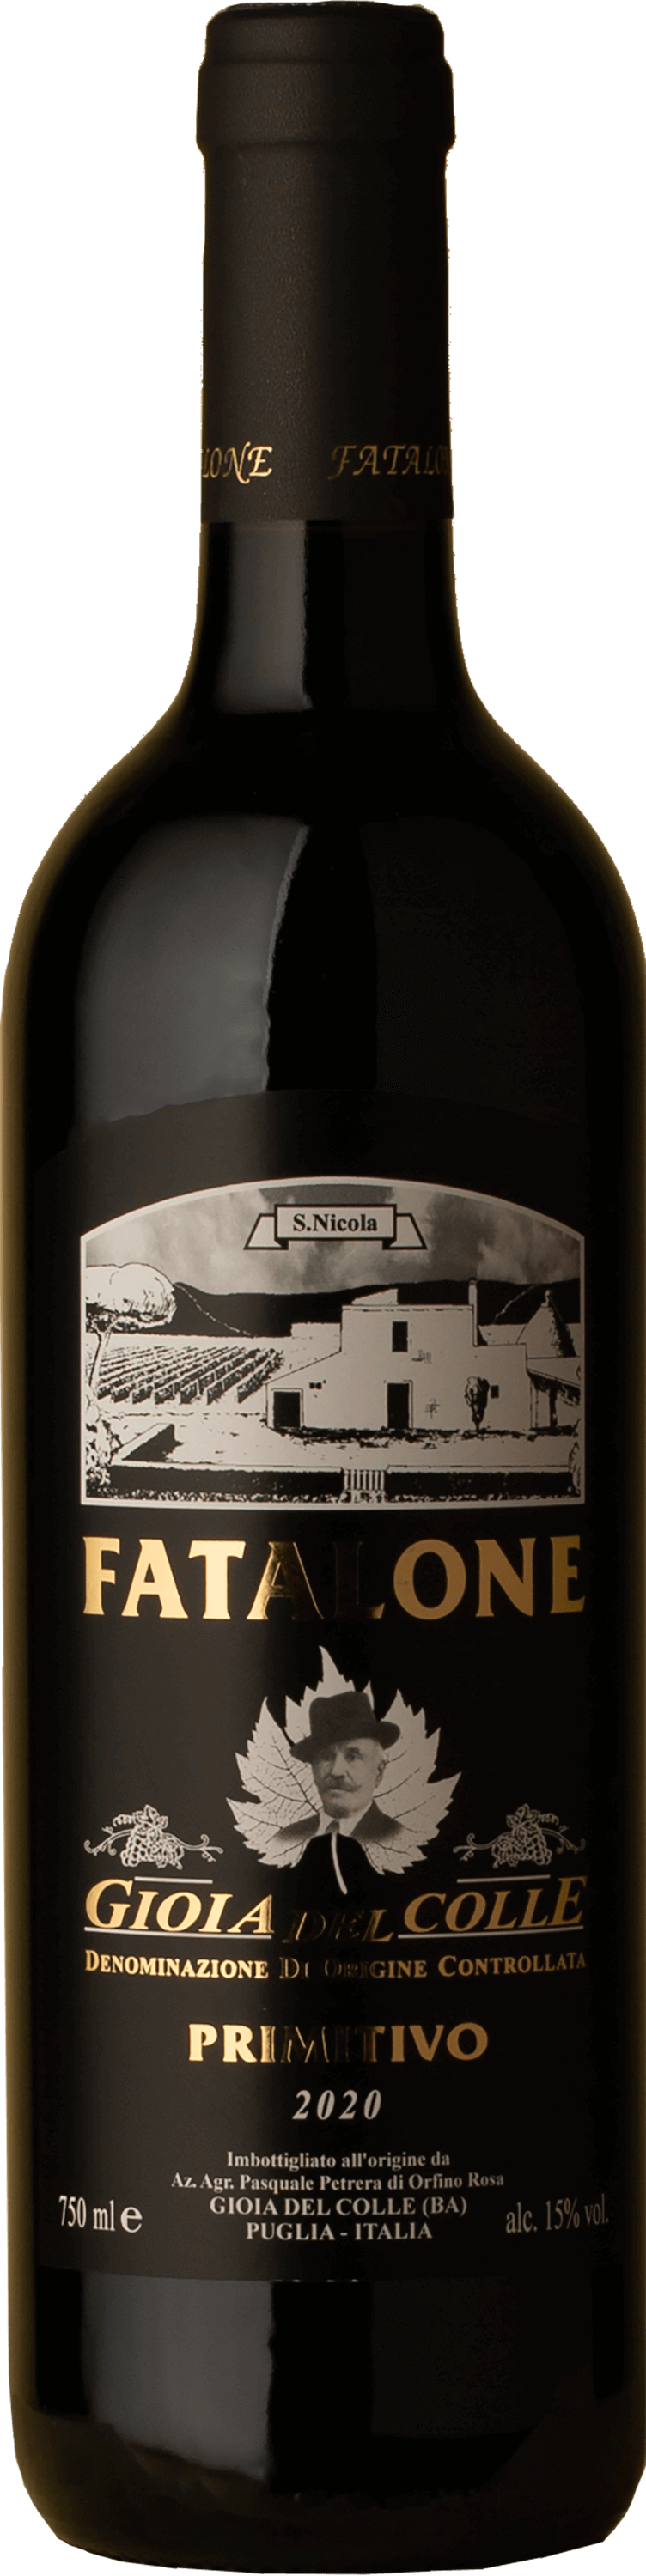 Fatalone - Gioia Del Colle Primitivo 2020 Red Wine